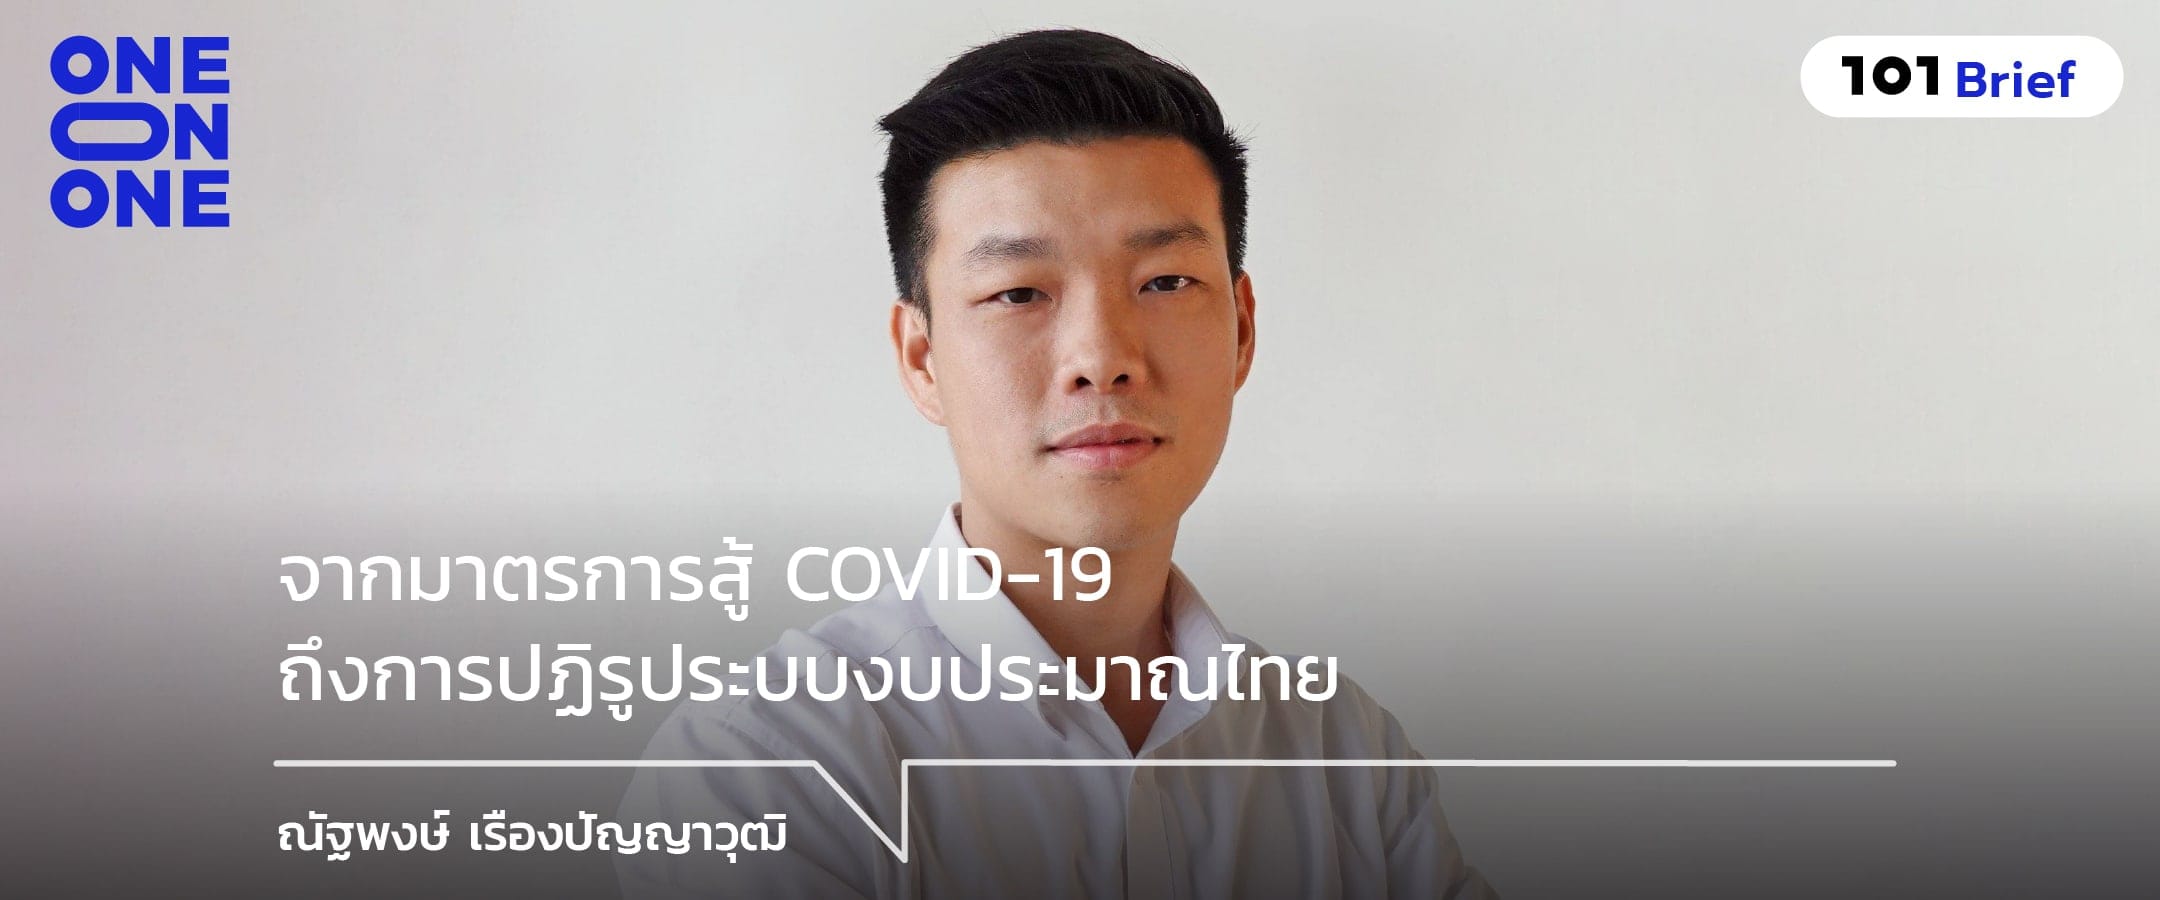 จากมาตรการสู้ COVID-19 ถึงการปฏิรูประบบงบประมาณไทย กับ ณัฐพงษ์ เรืองปัญญาวุฒิ